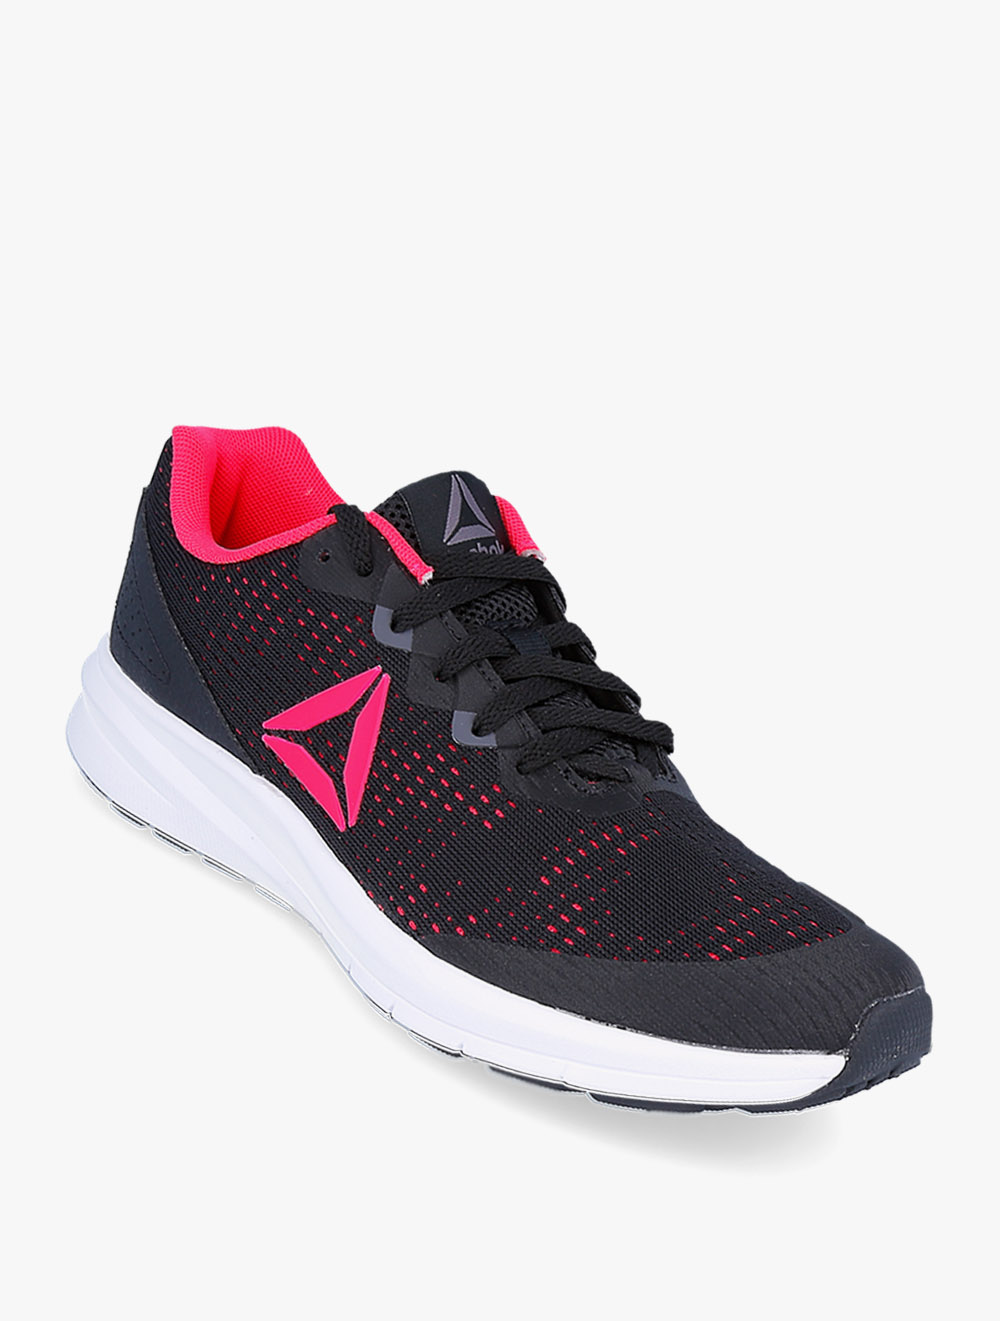 Reebok Runner 3.0 Women's Shoes